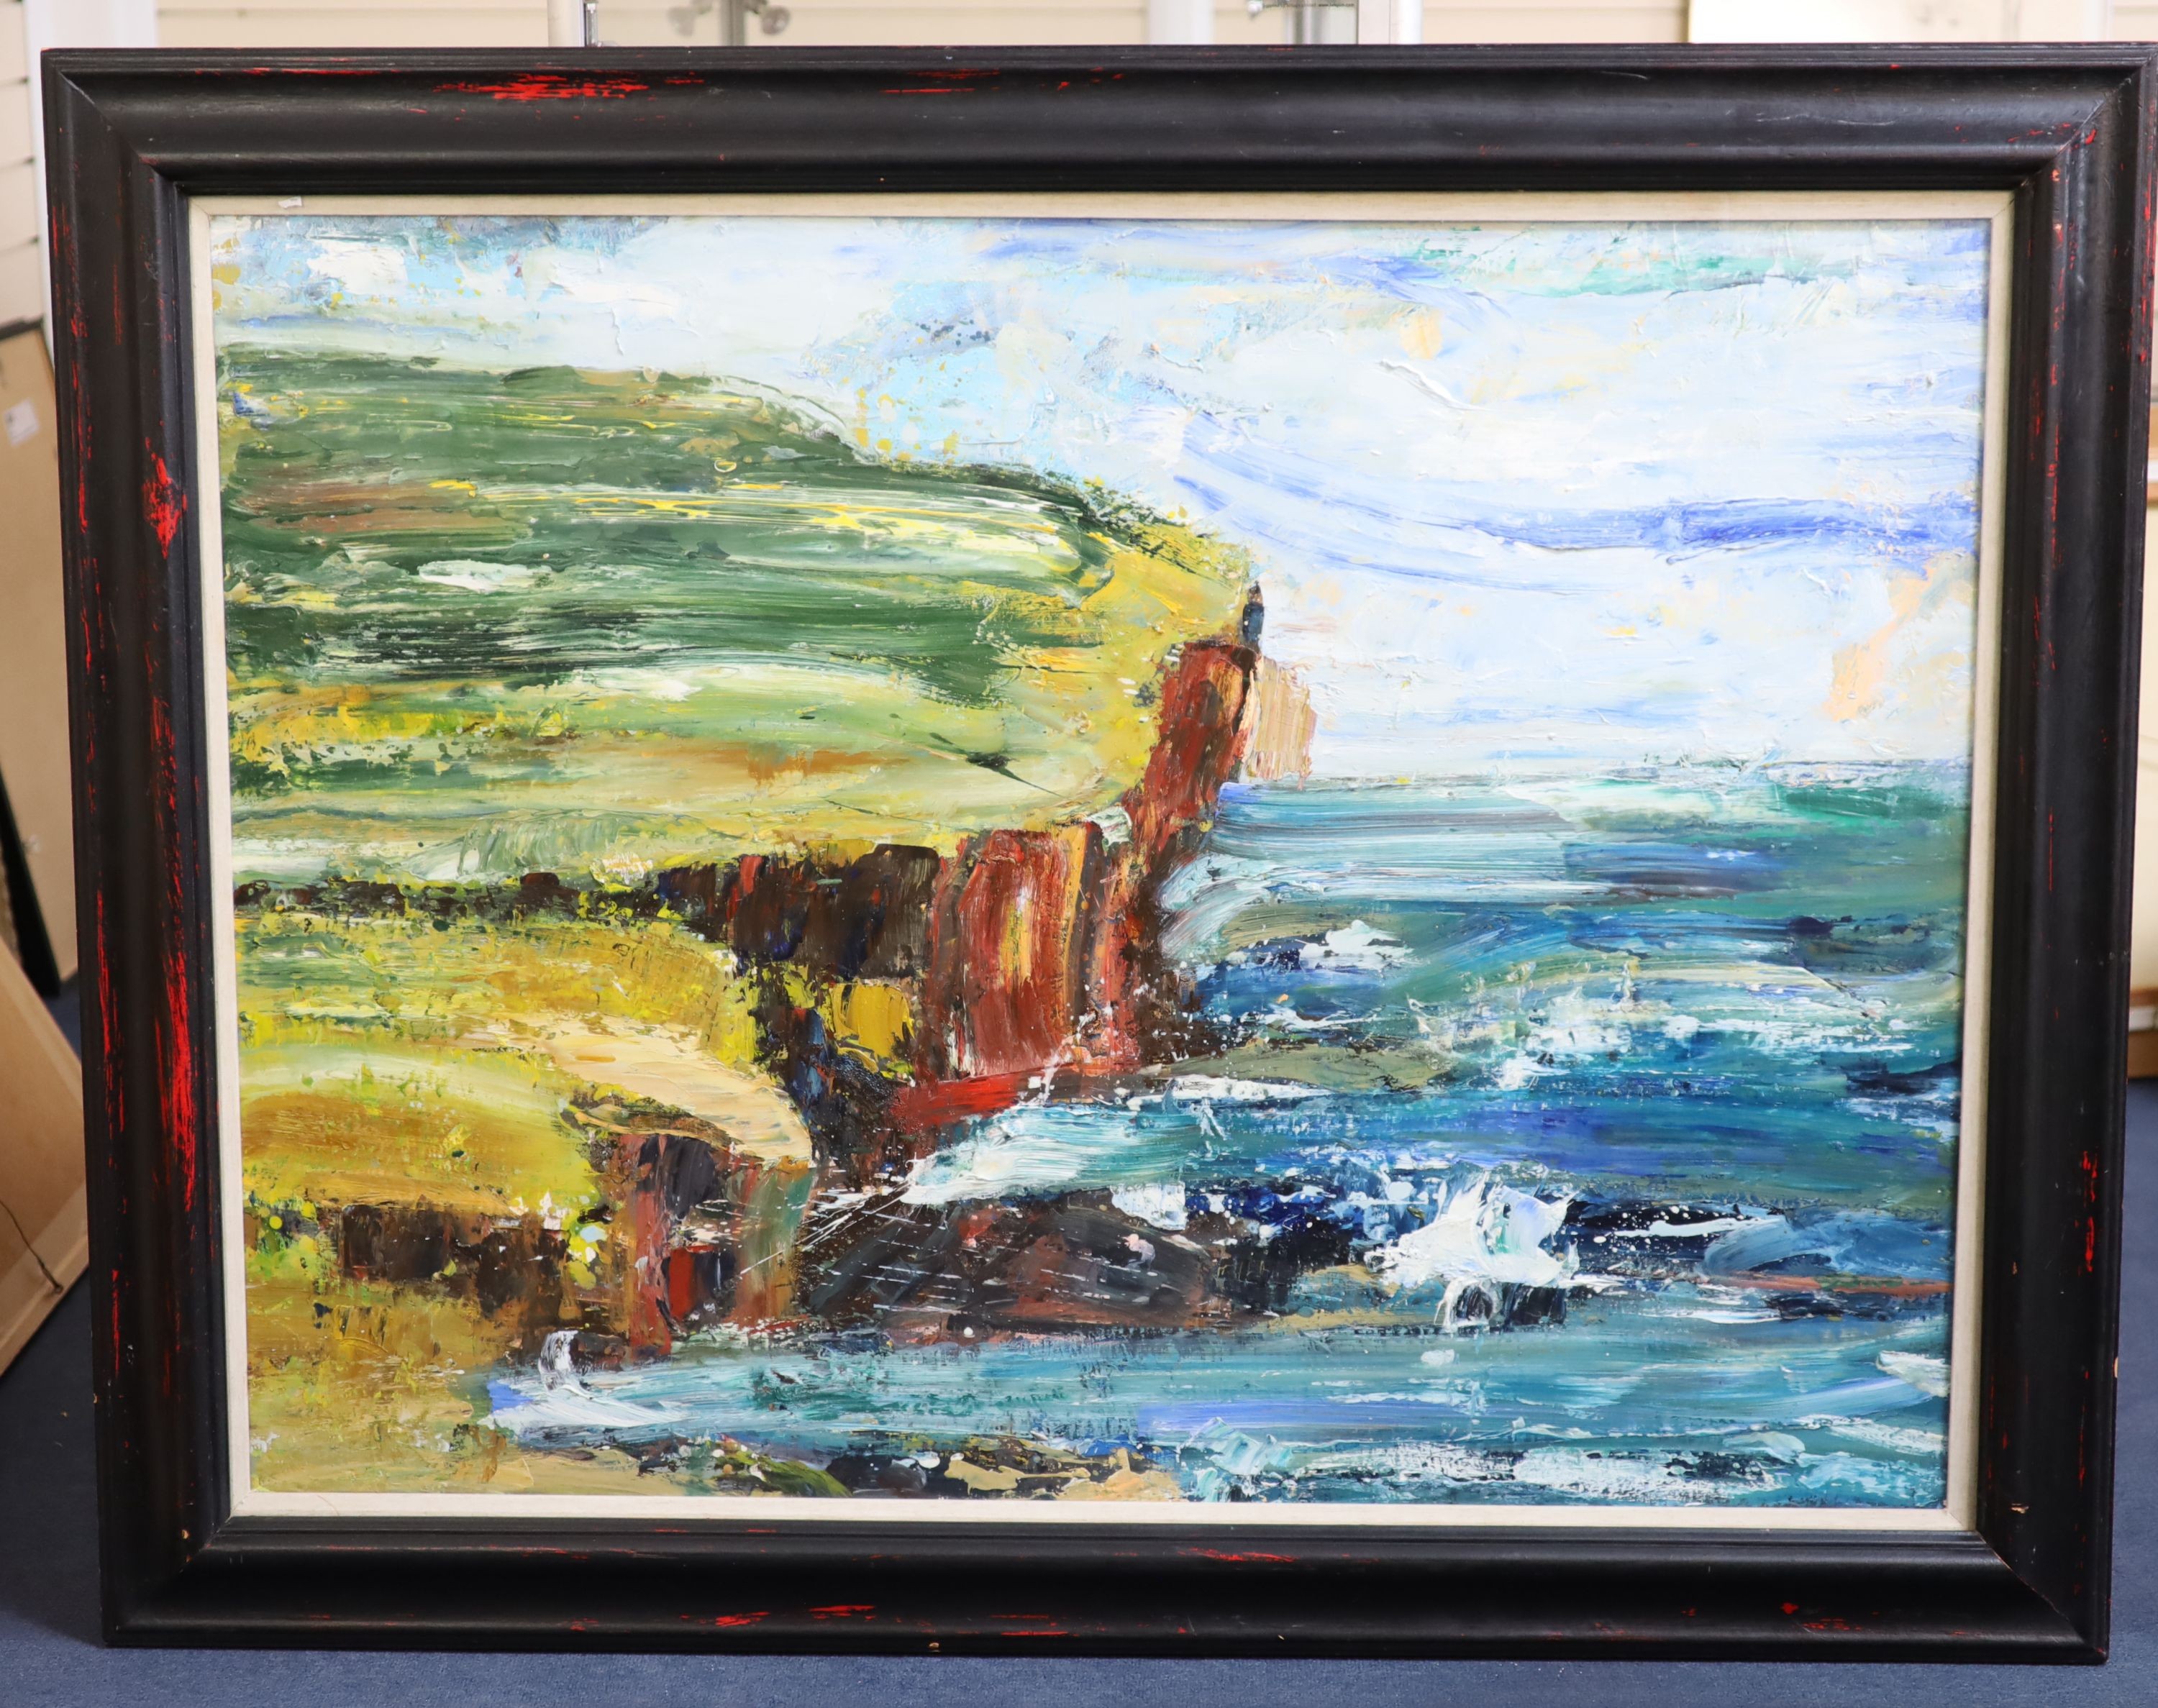 Peter Mclaren (1964-), Brought of Birsay, 1997, Oil on board, 91 x 122cm.